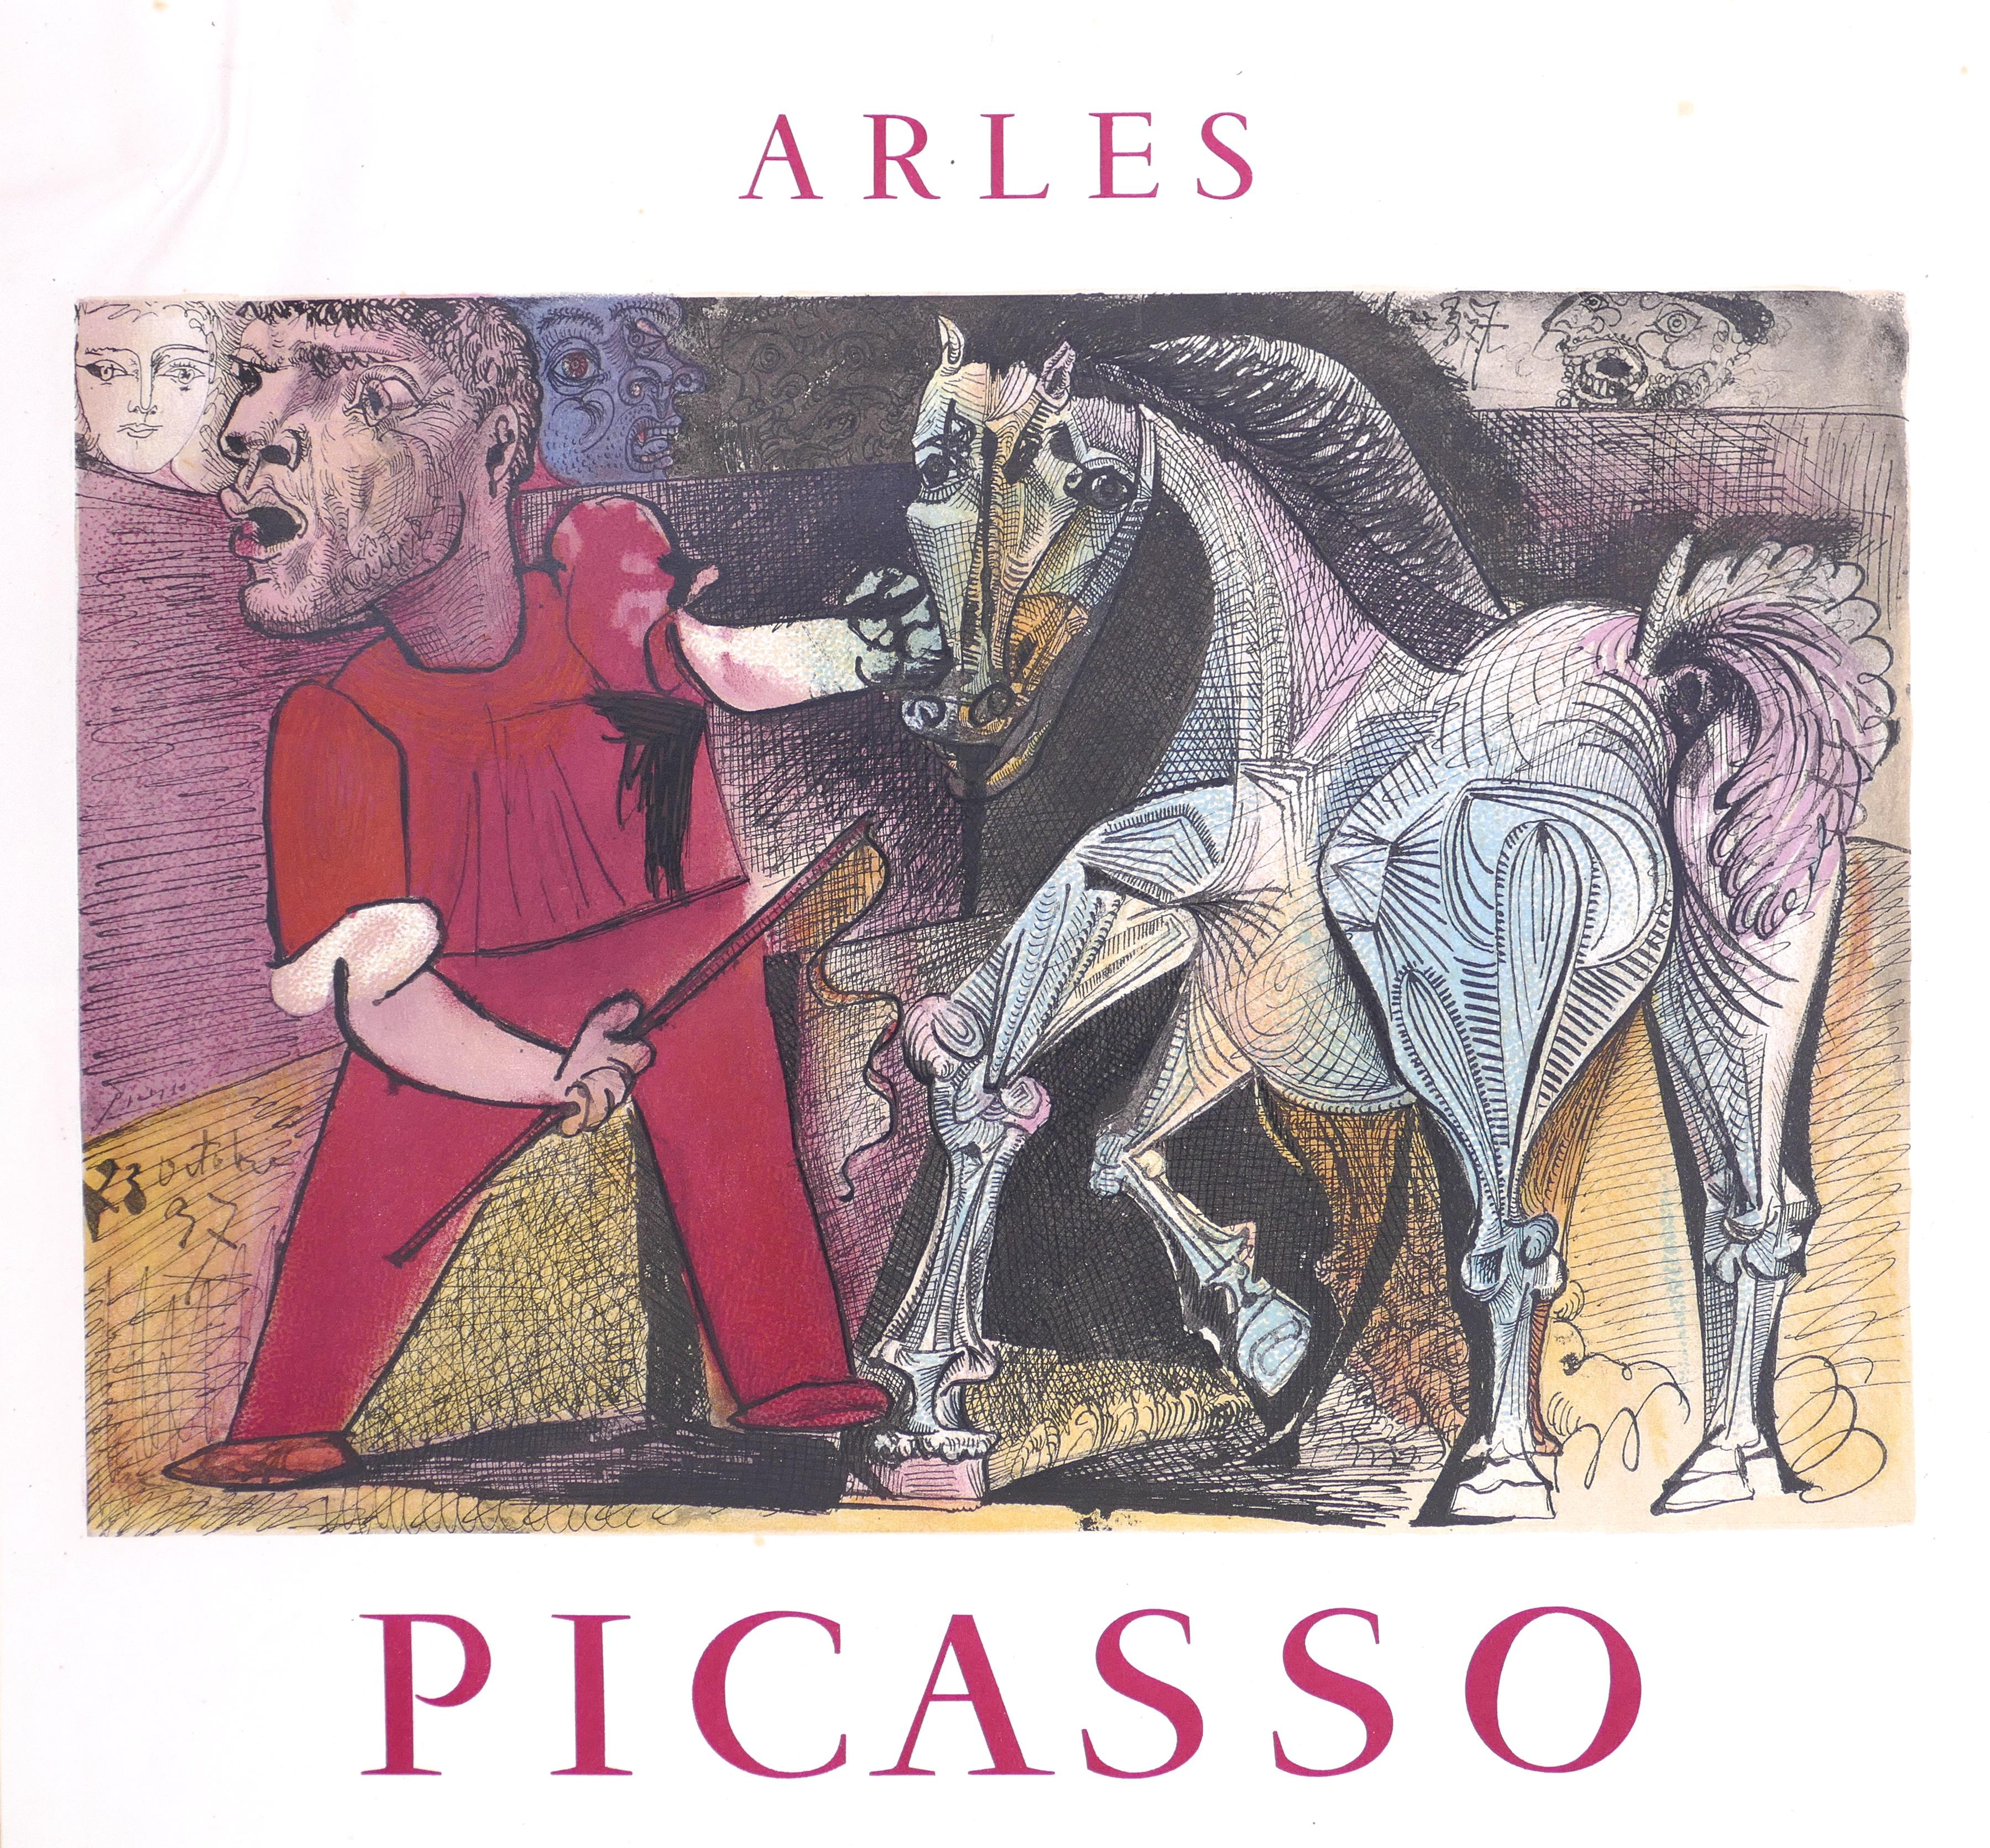 Affiche de l'exposition Picasso à Arles - 1957 est une affiche offset et lithographique vintage pour une exposition d'œuvres du grand artiste et sculpteur espagnol Pablo Picasso (1881-1973).

Édition limitée à 1000 exemplaires. Imprimé par Mourlot,